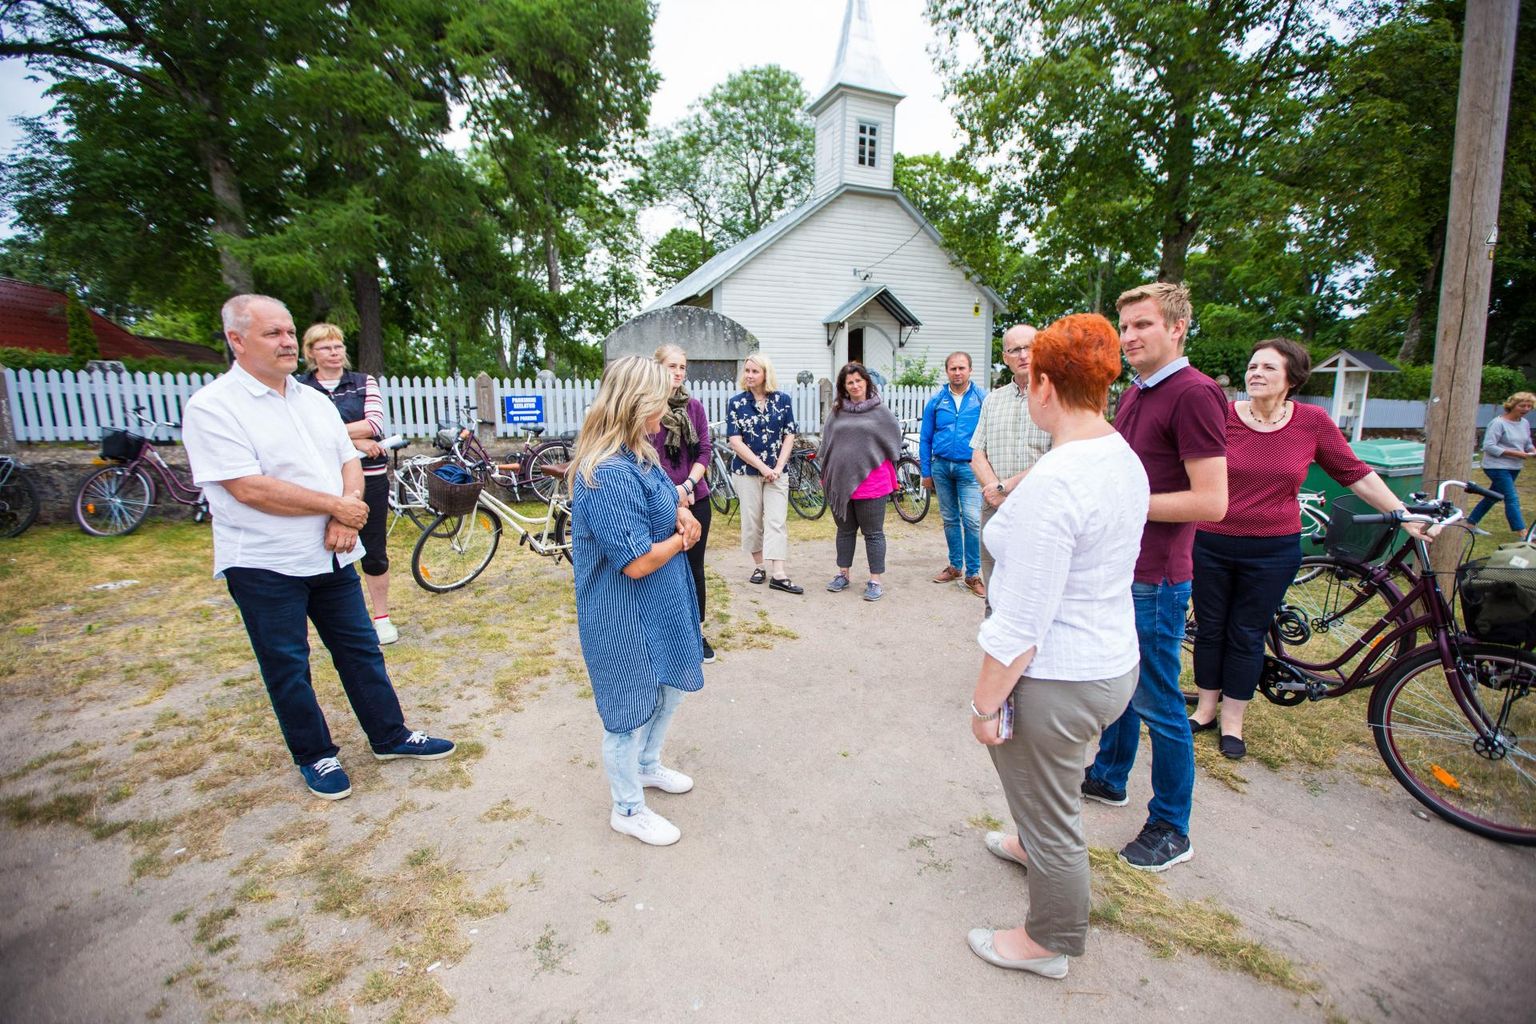 Aasta küla komisjoni liikmed tutvusid Käsmu külaga.